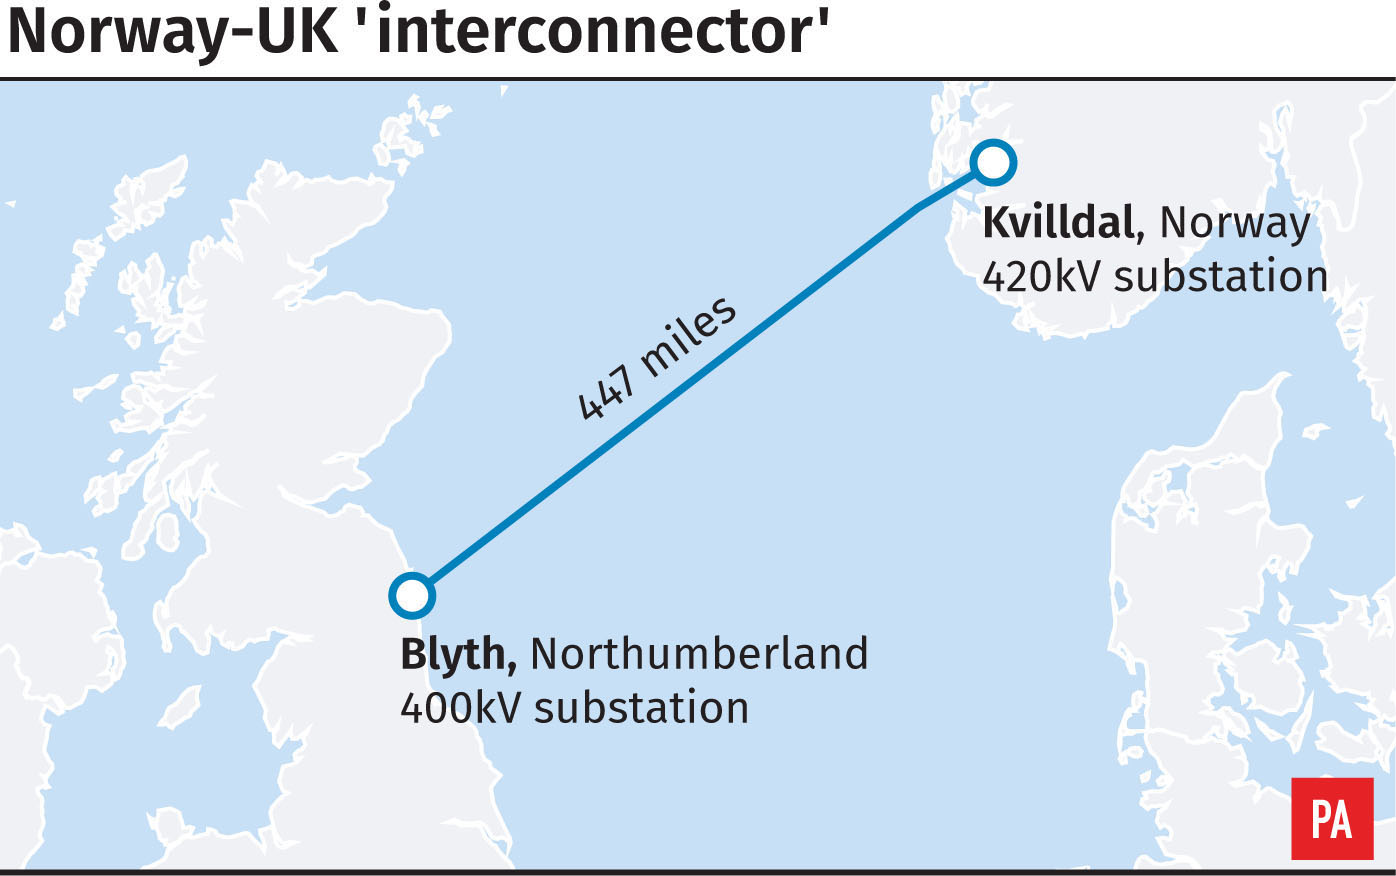 World's longest interconnector between Norway and the UK